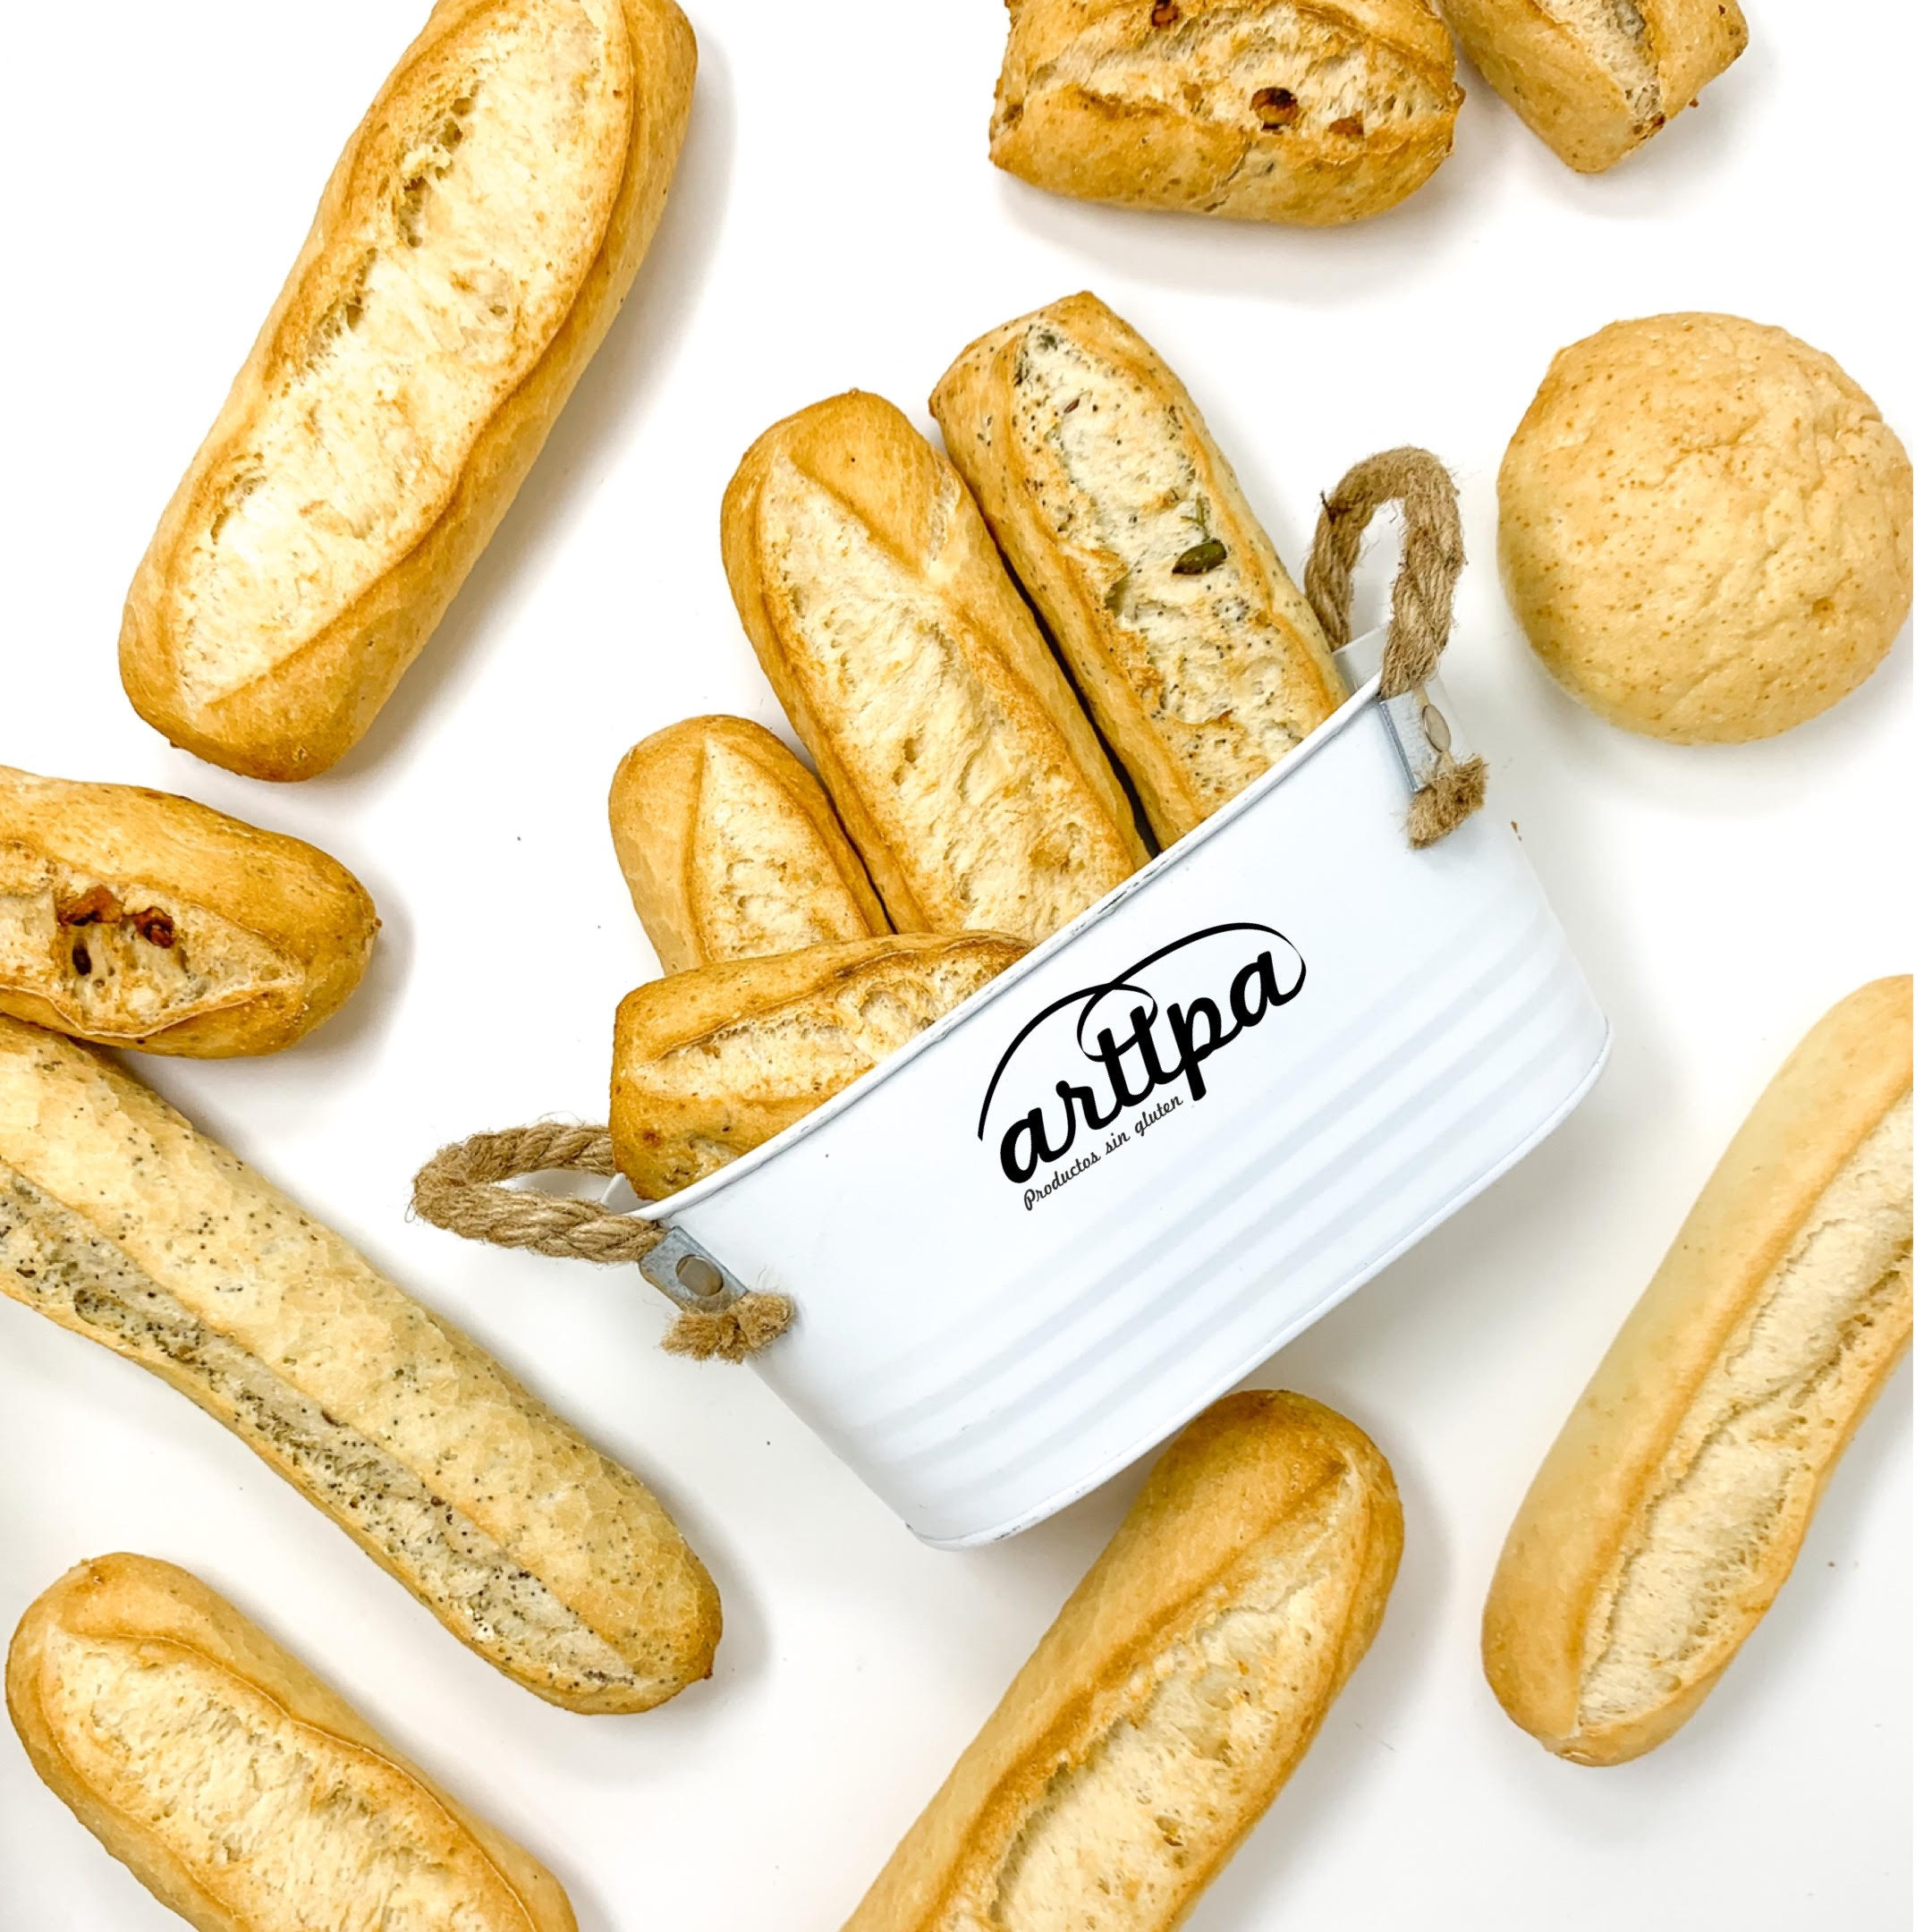 Tienda Online: Próxima Inauguración De Bread-Box